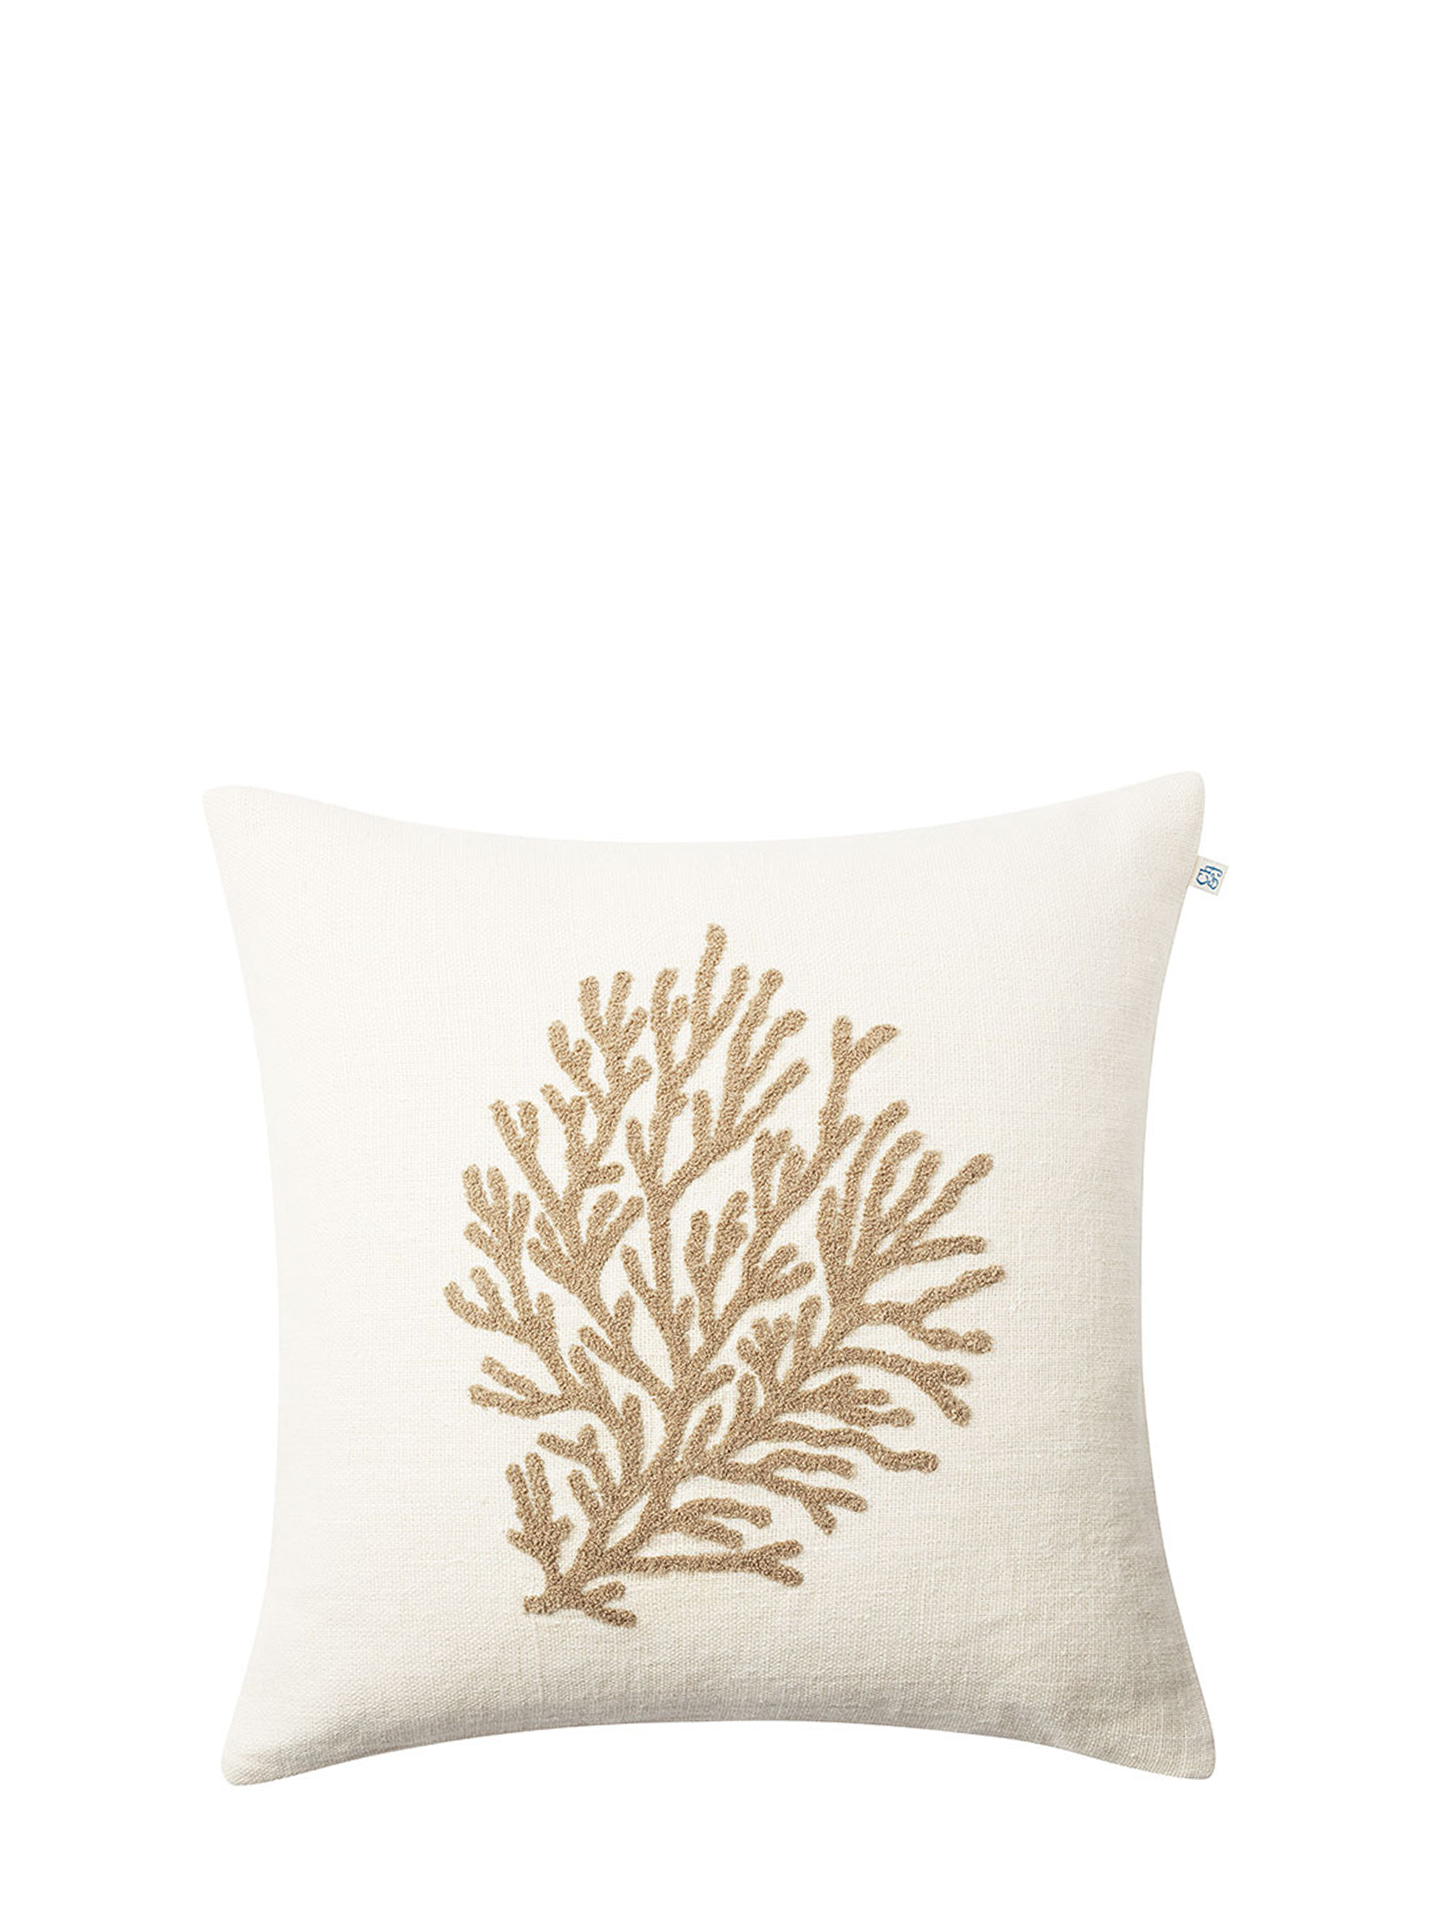 Coral Cushion Cover, Khaki